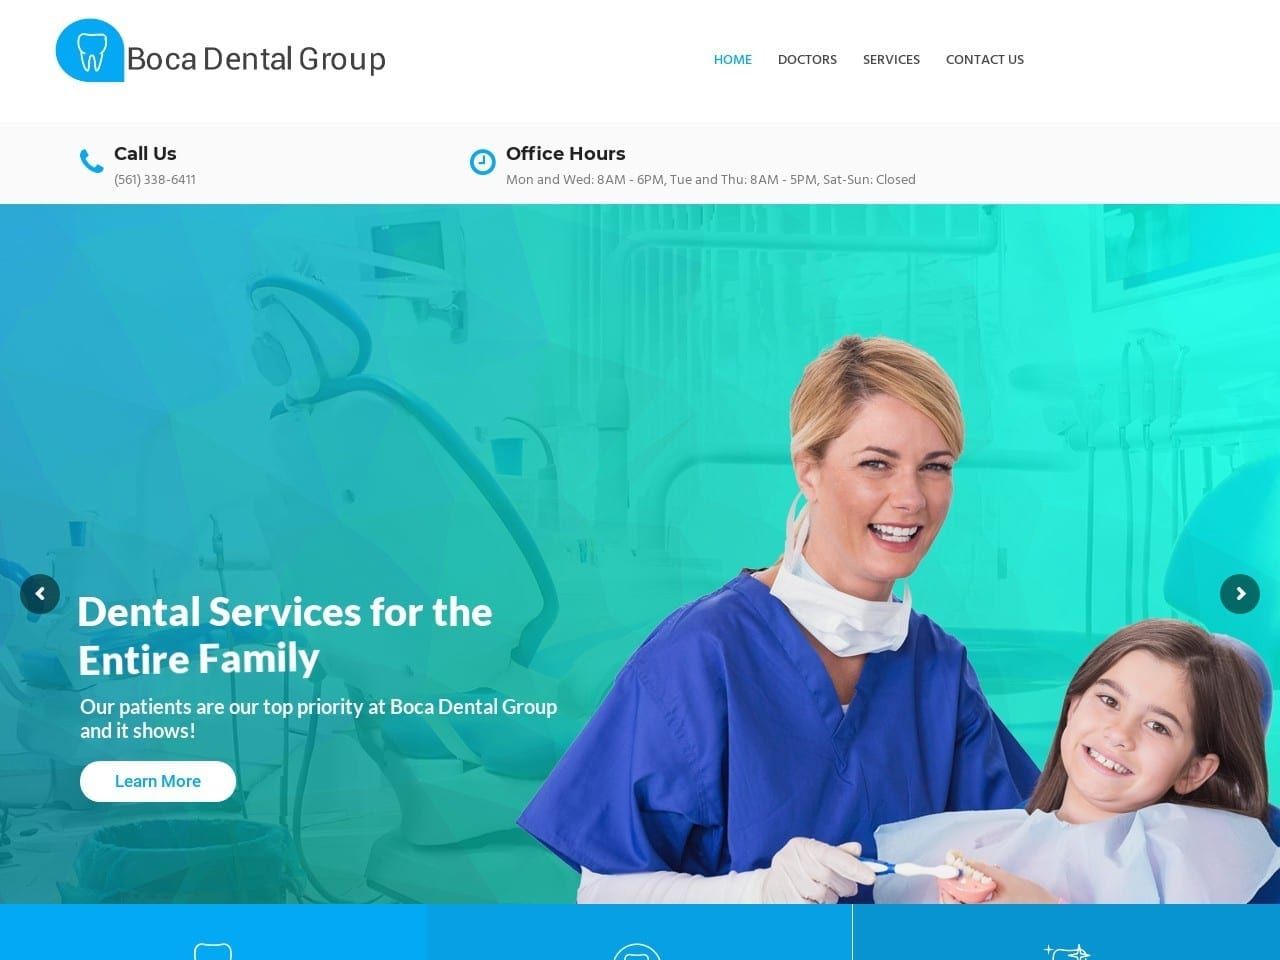 Boca Dental Group Website Screenshot from bocadentalgroup.com